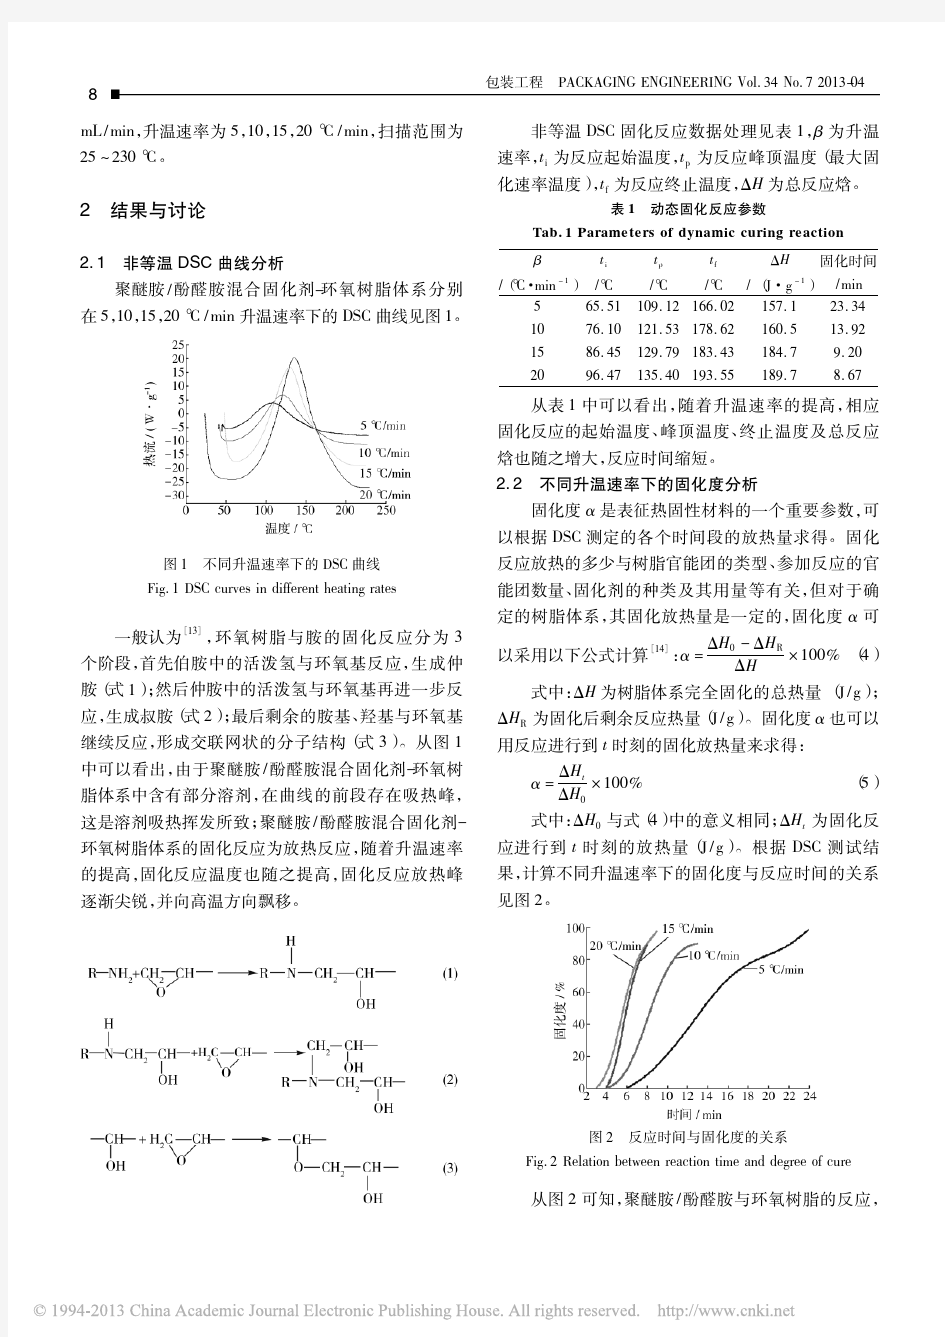 DSC法研究聚醚胺_酚醛胺_环氧树脂体系的固化行为_张天才